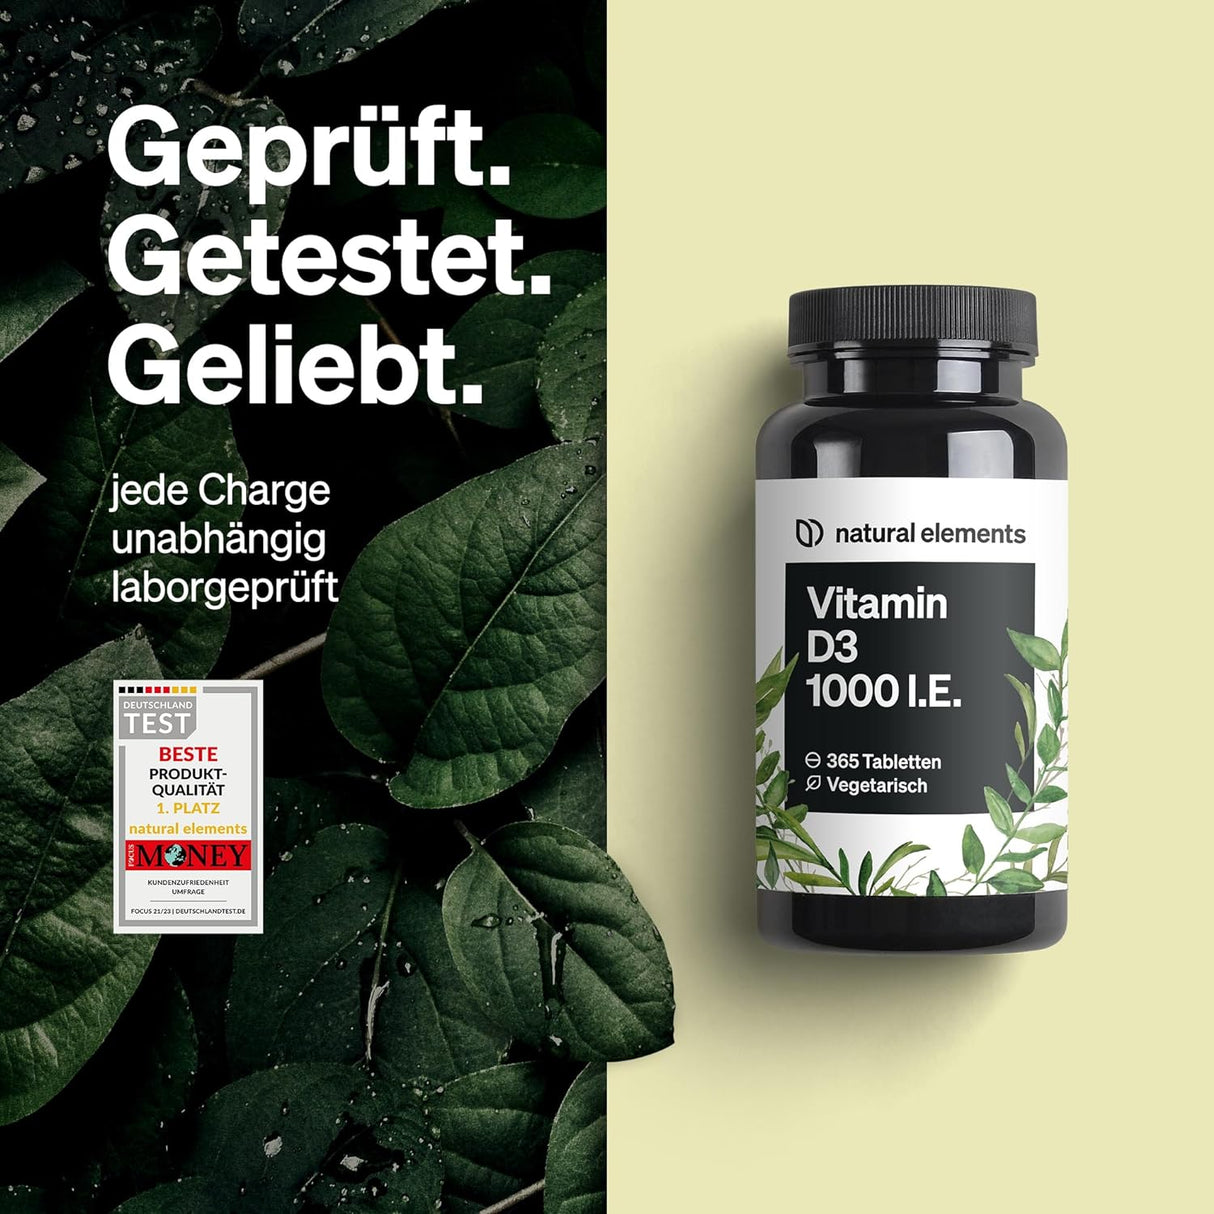 Vitamin D3 1000 I.E. – 365 Tabletten Im Jahresvorat – Vitamin D Für Knochen Und Immunsystem – Hochdosiert, Ohne Unnötige Zusätze – in Deutschland Produziert & Laborgeprüft